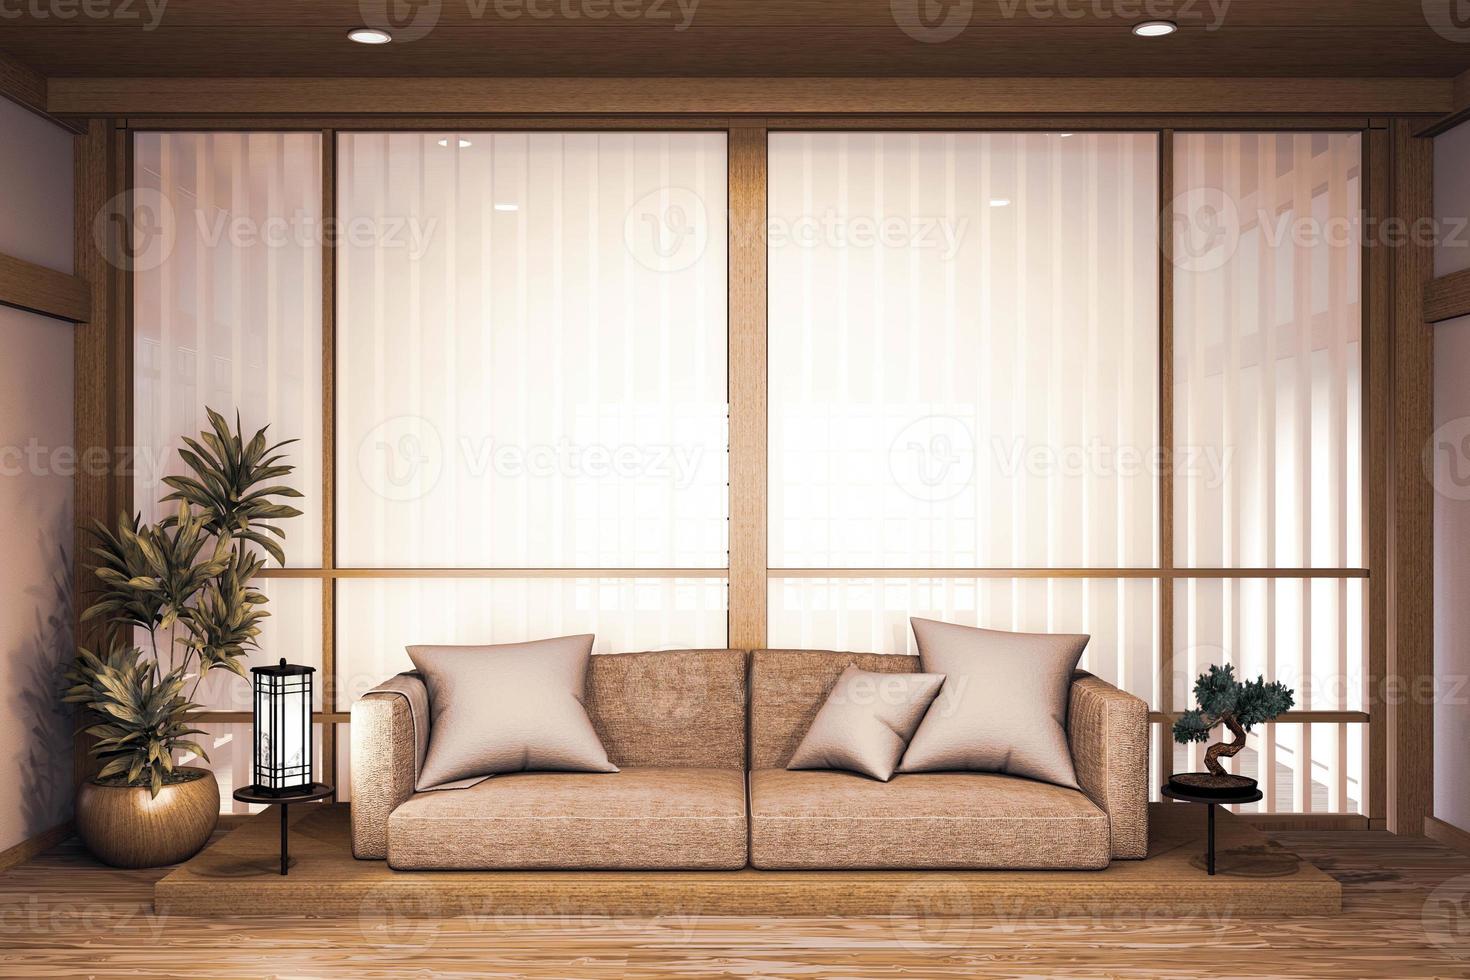 sofá de madeira design japonês, piso de madeira japonesa na sala e lâmpada de decoração e vaso de plantas. foto